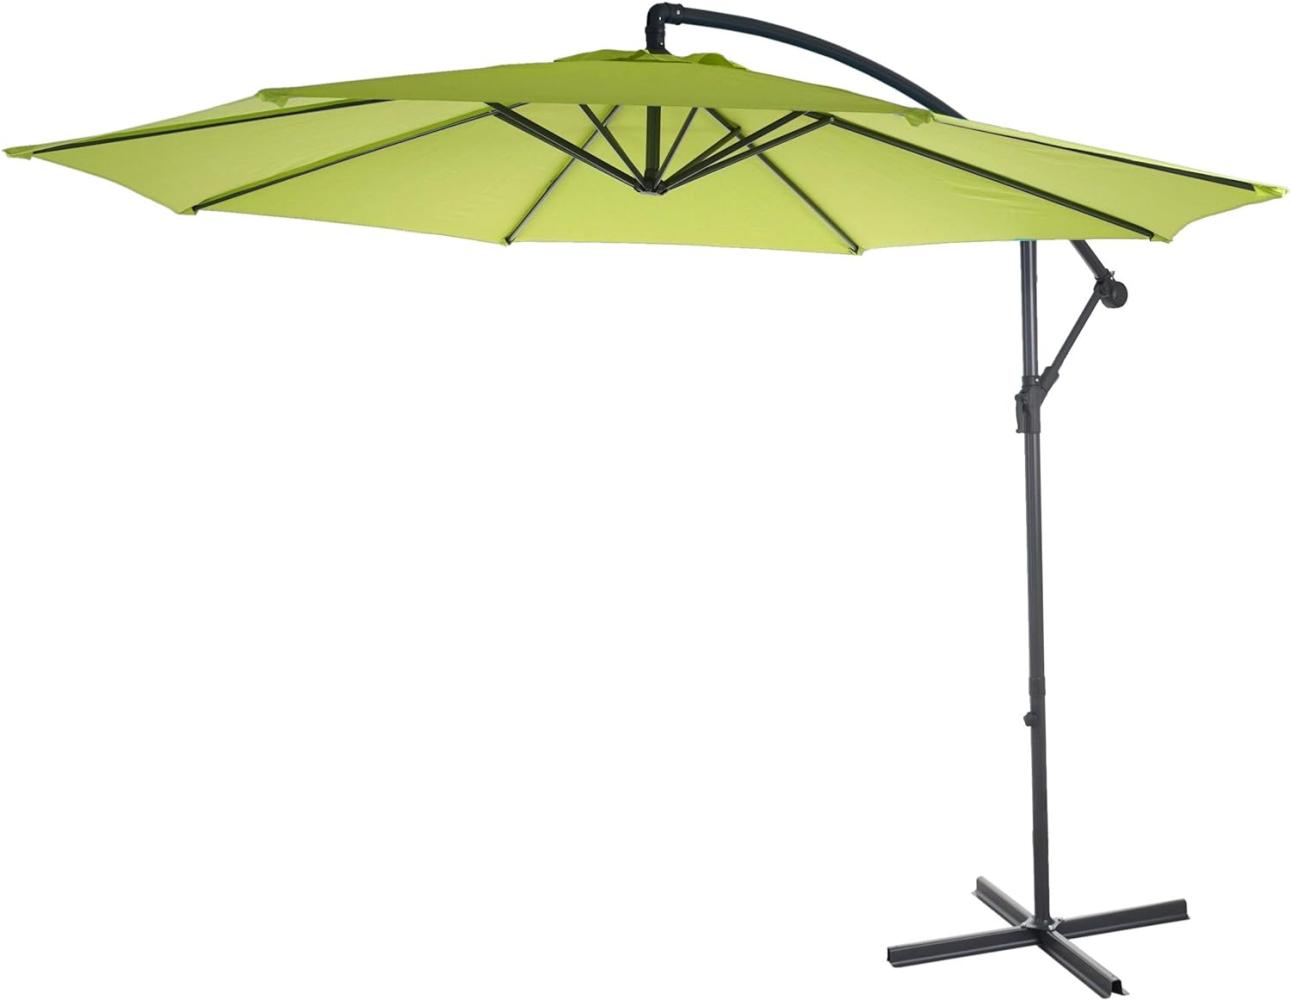 Ampelschirm Acerra, Sonnenschirm Sonnenschutz, Ø 3m neigbar, Polyester/Stahl 11kg ~ grün-lemon ohne Ständer Bild 1